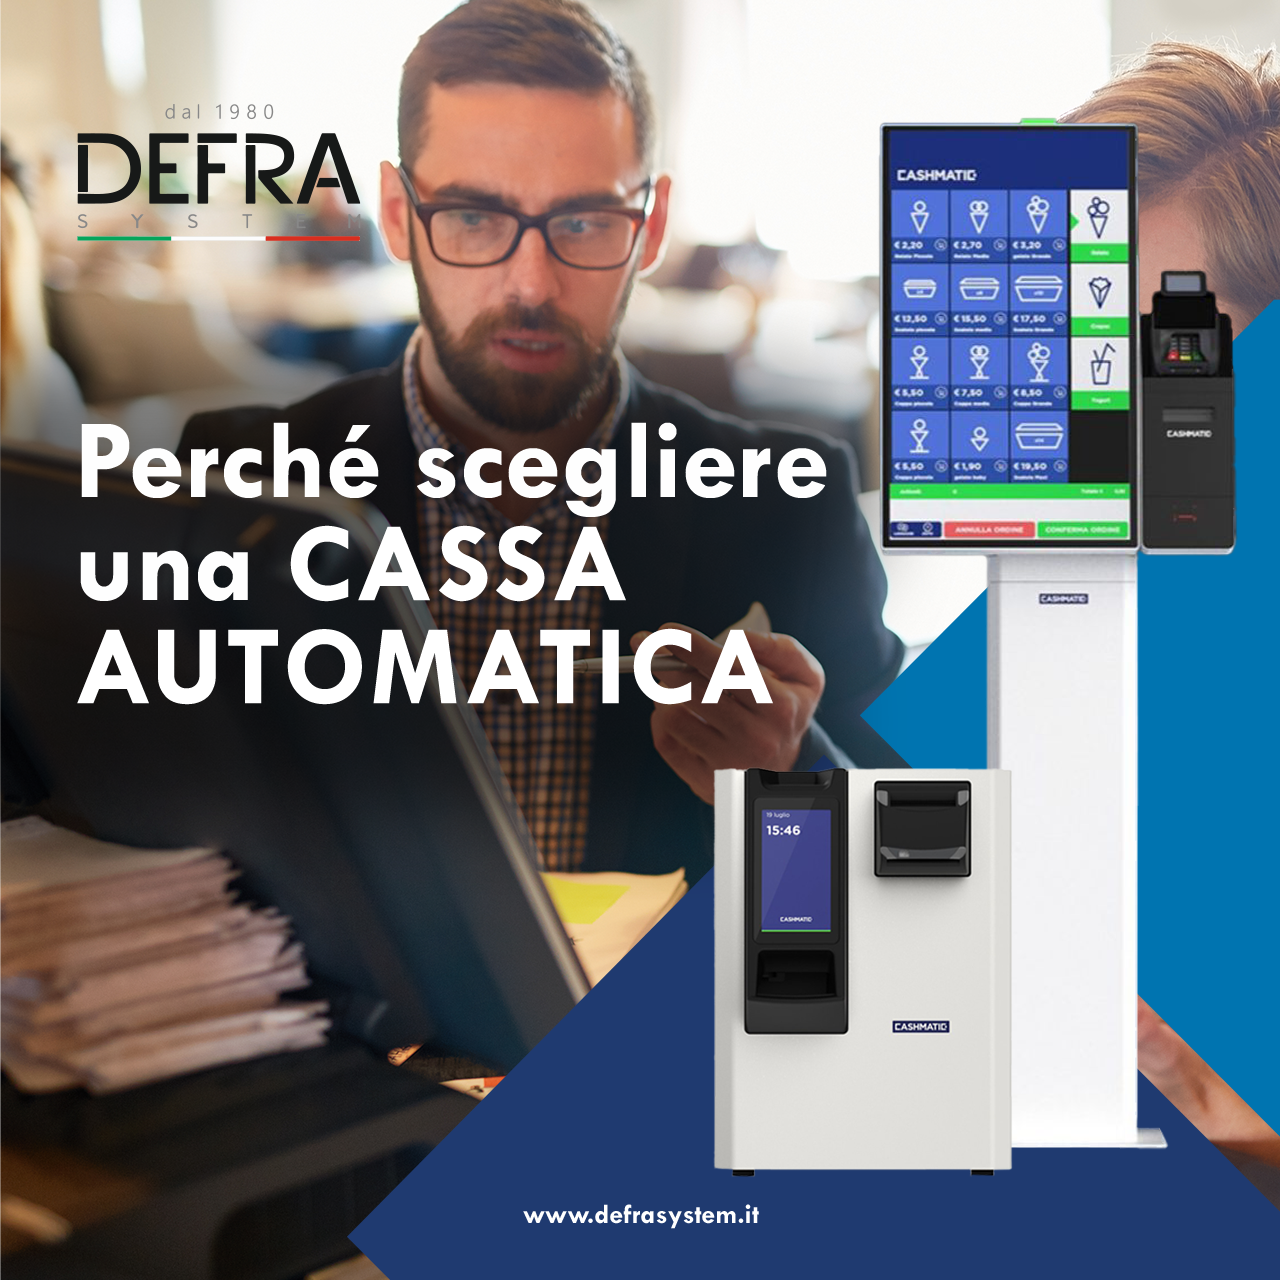 Cassa Automatica DEFRA System